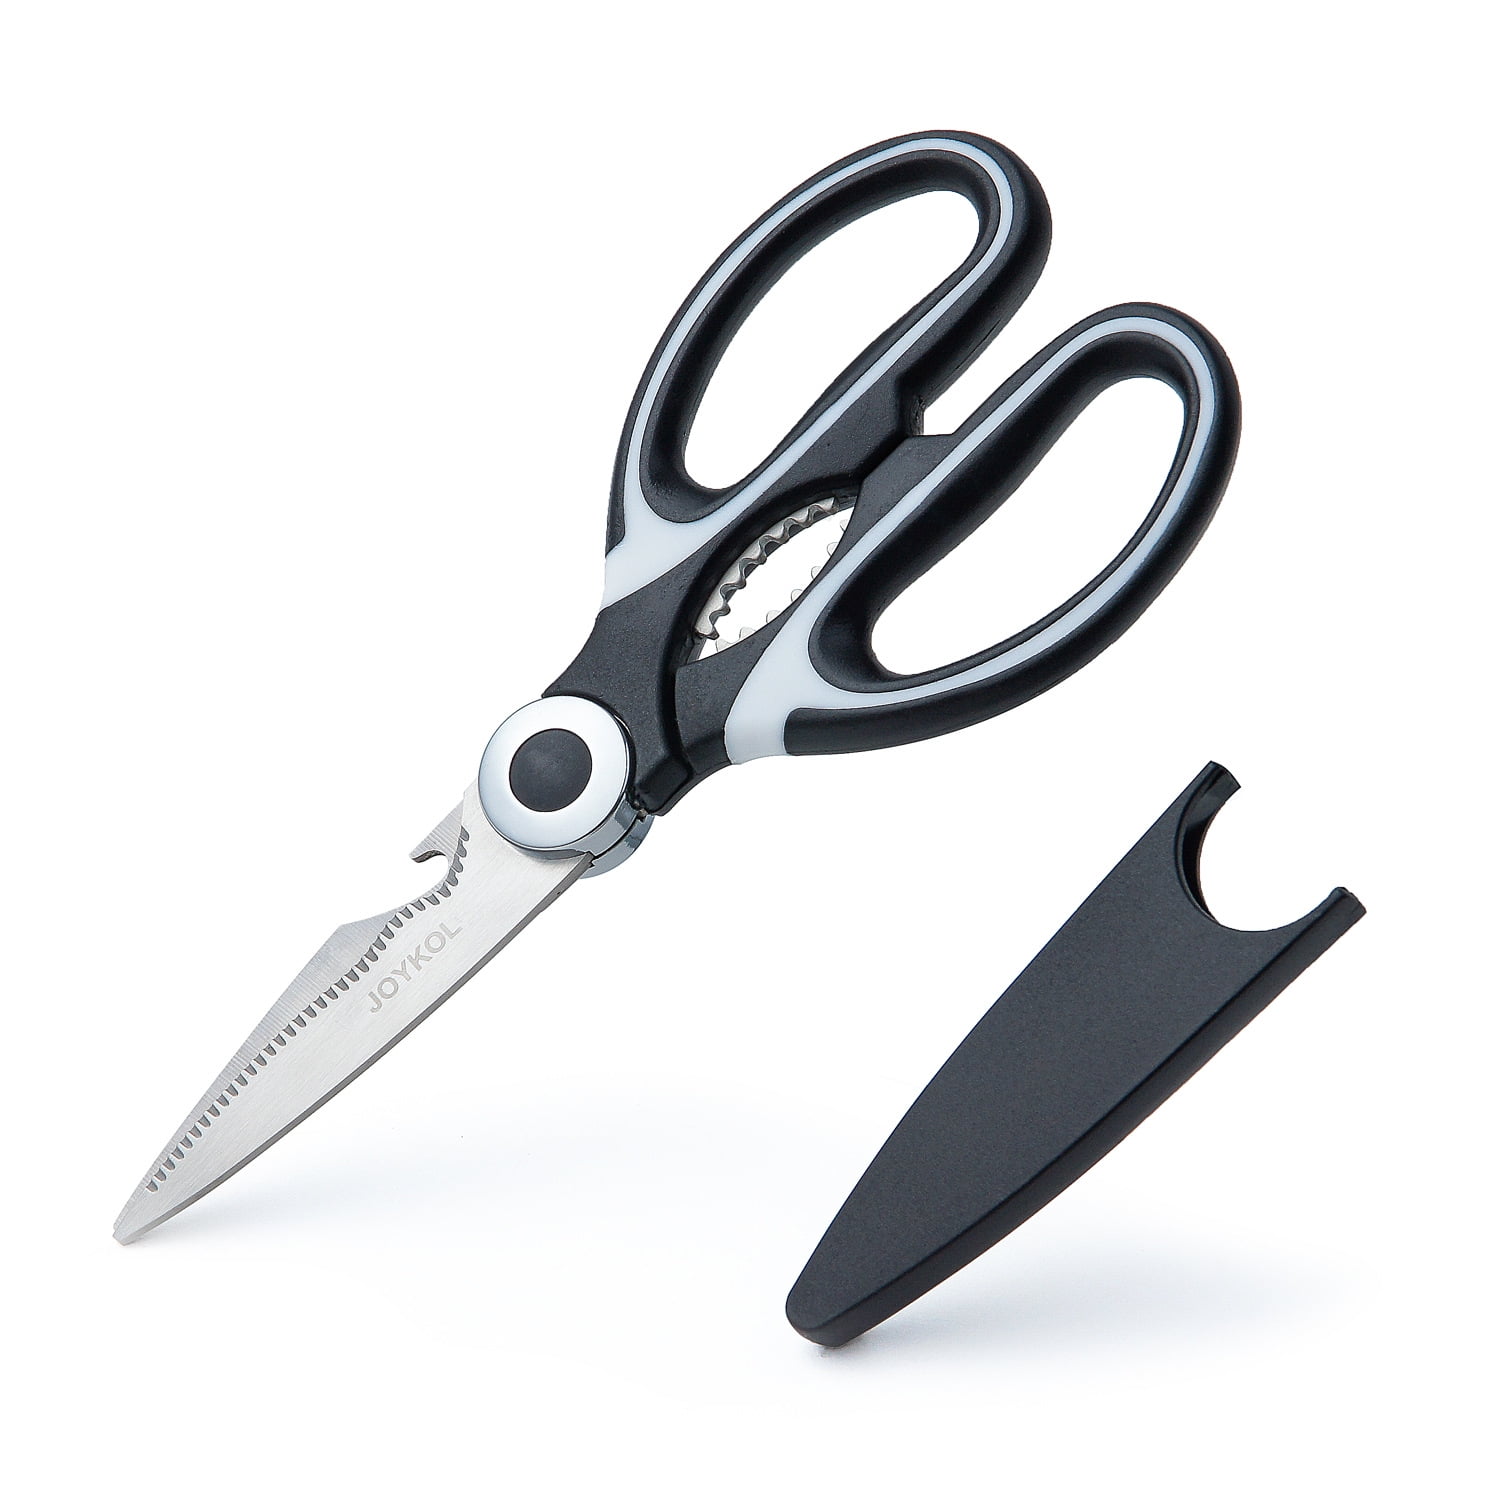 BoFuYuan Utility Scissors Heavy Duty Multipurpose 8'',sharp